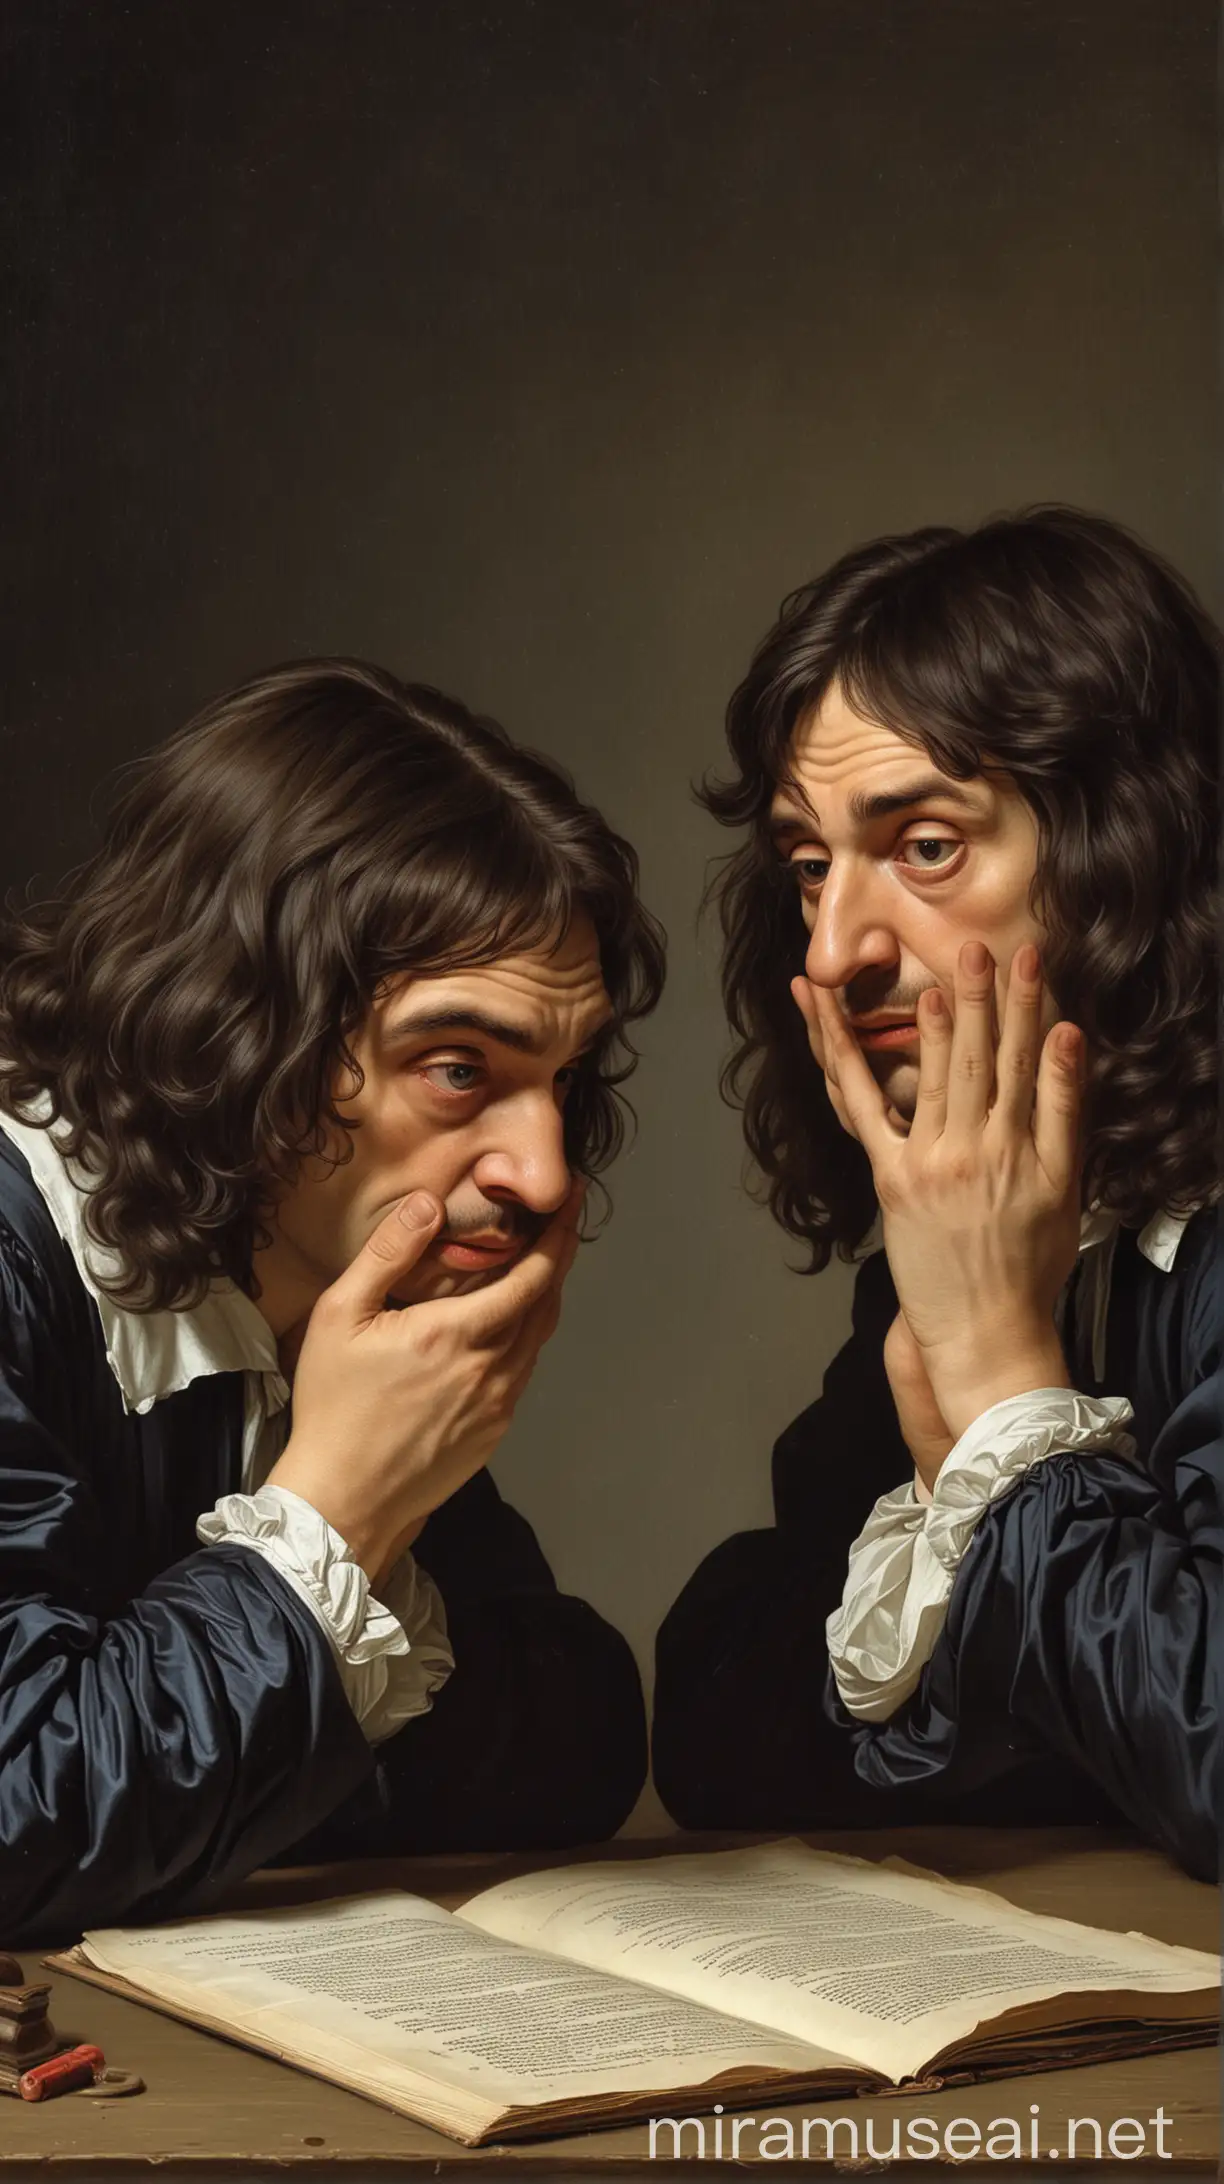 2 Descartes man doubting each other 